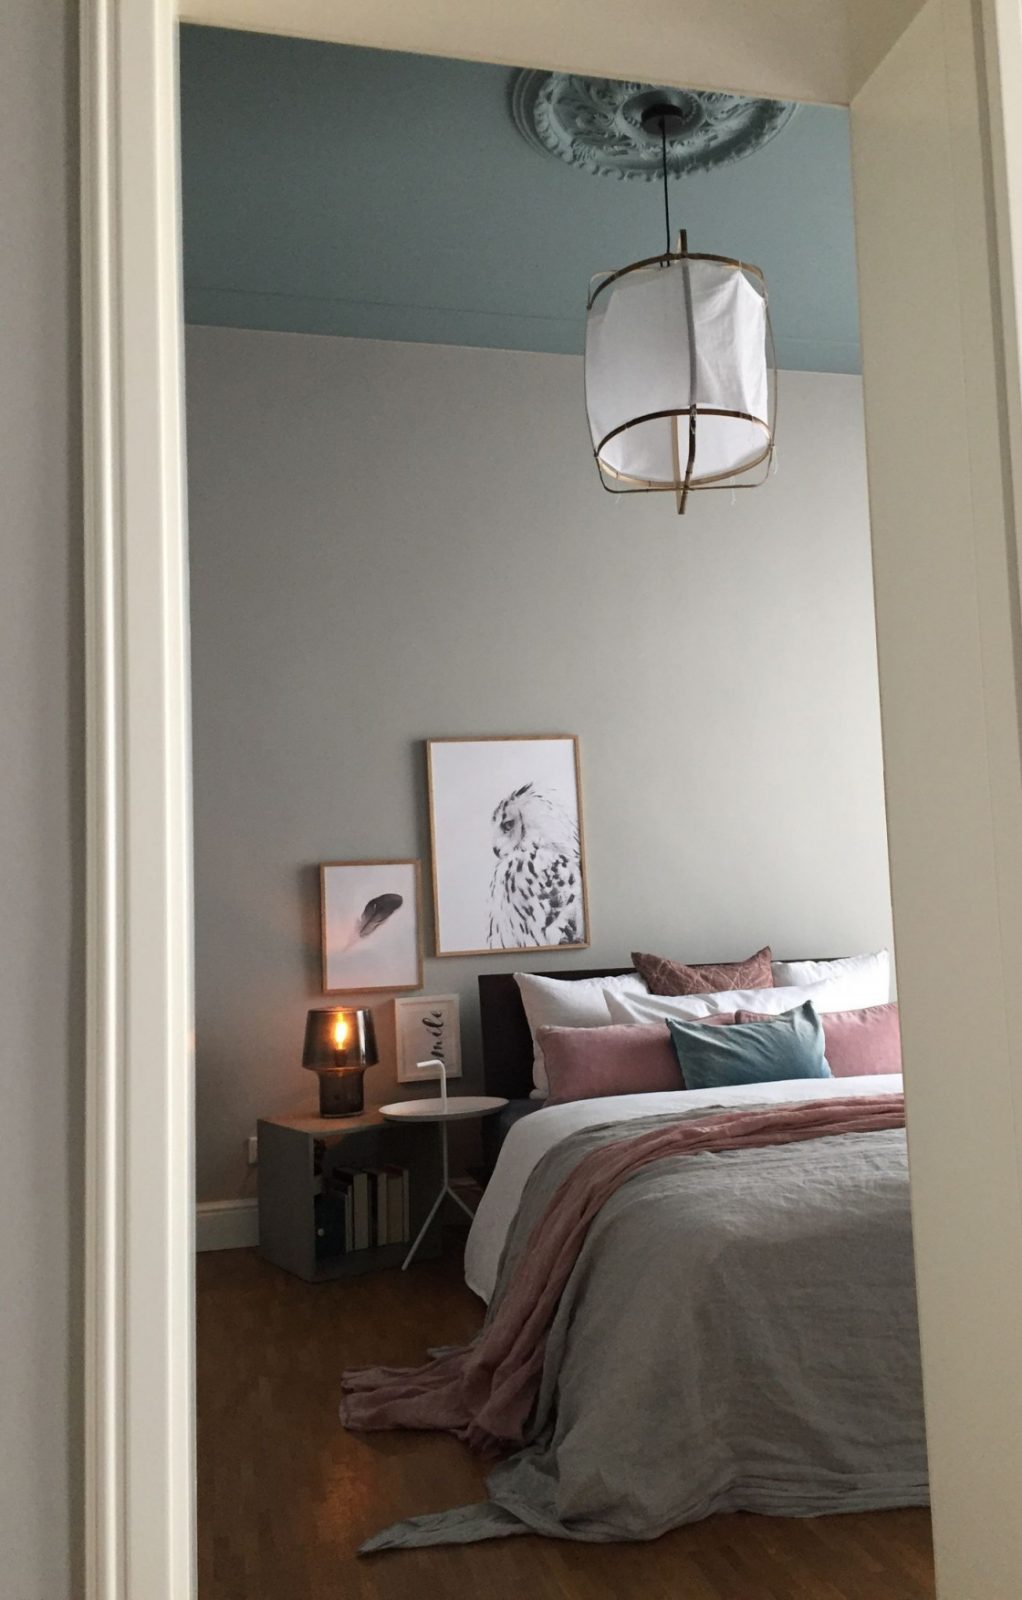 Die Besten Ideen Für Die Wandgestaltung Im Schlafzimmer von Schlafzimmer Ideen Wandgestaltung Bild